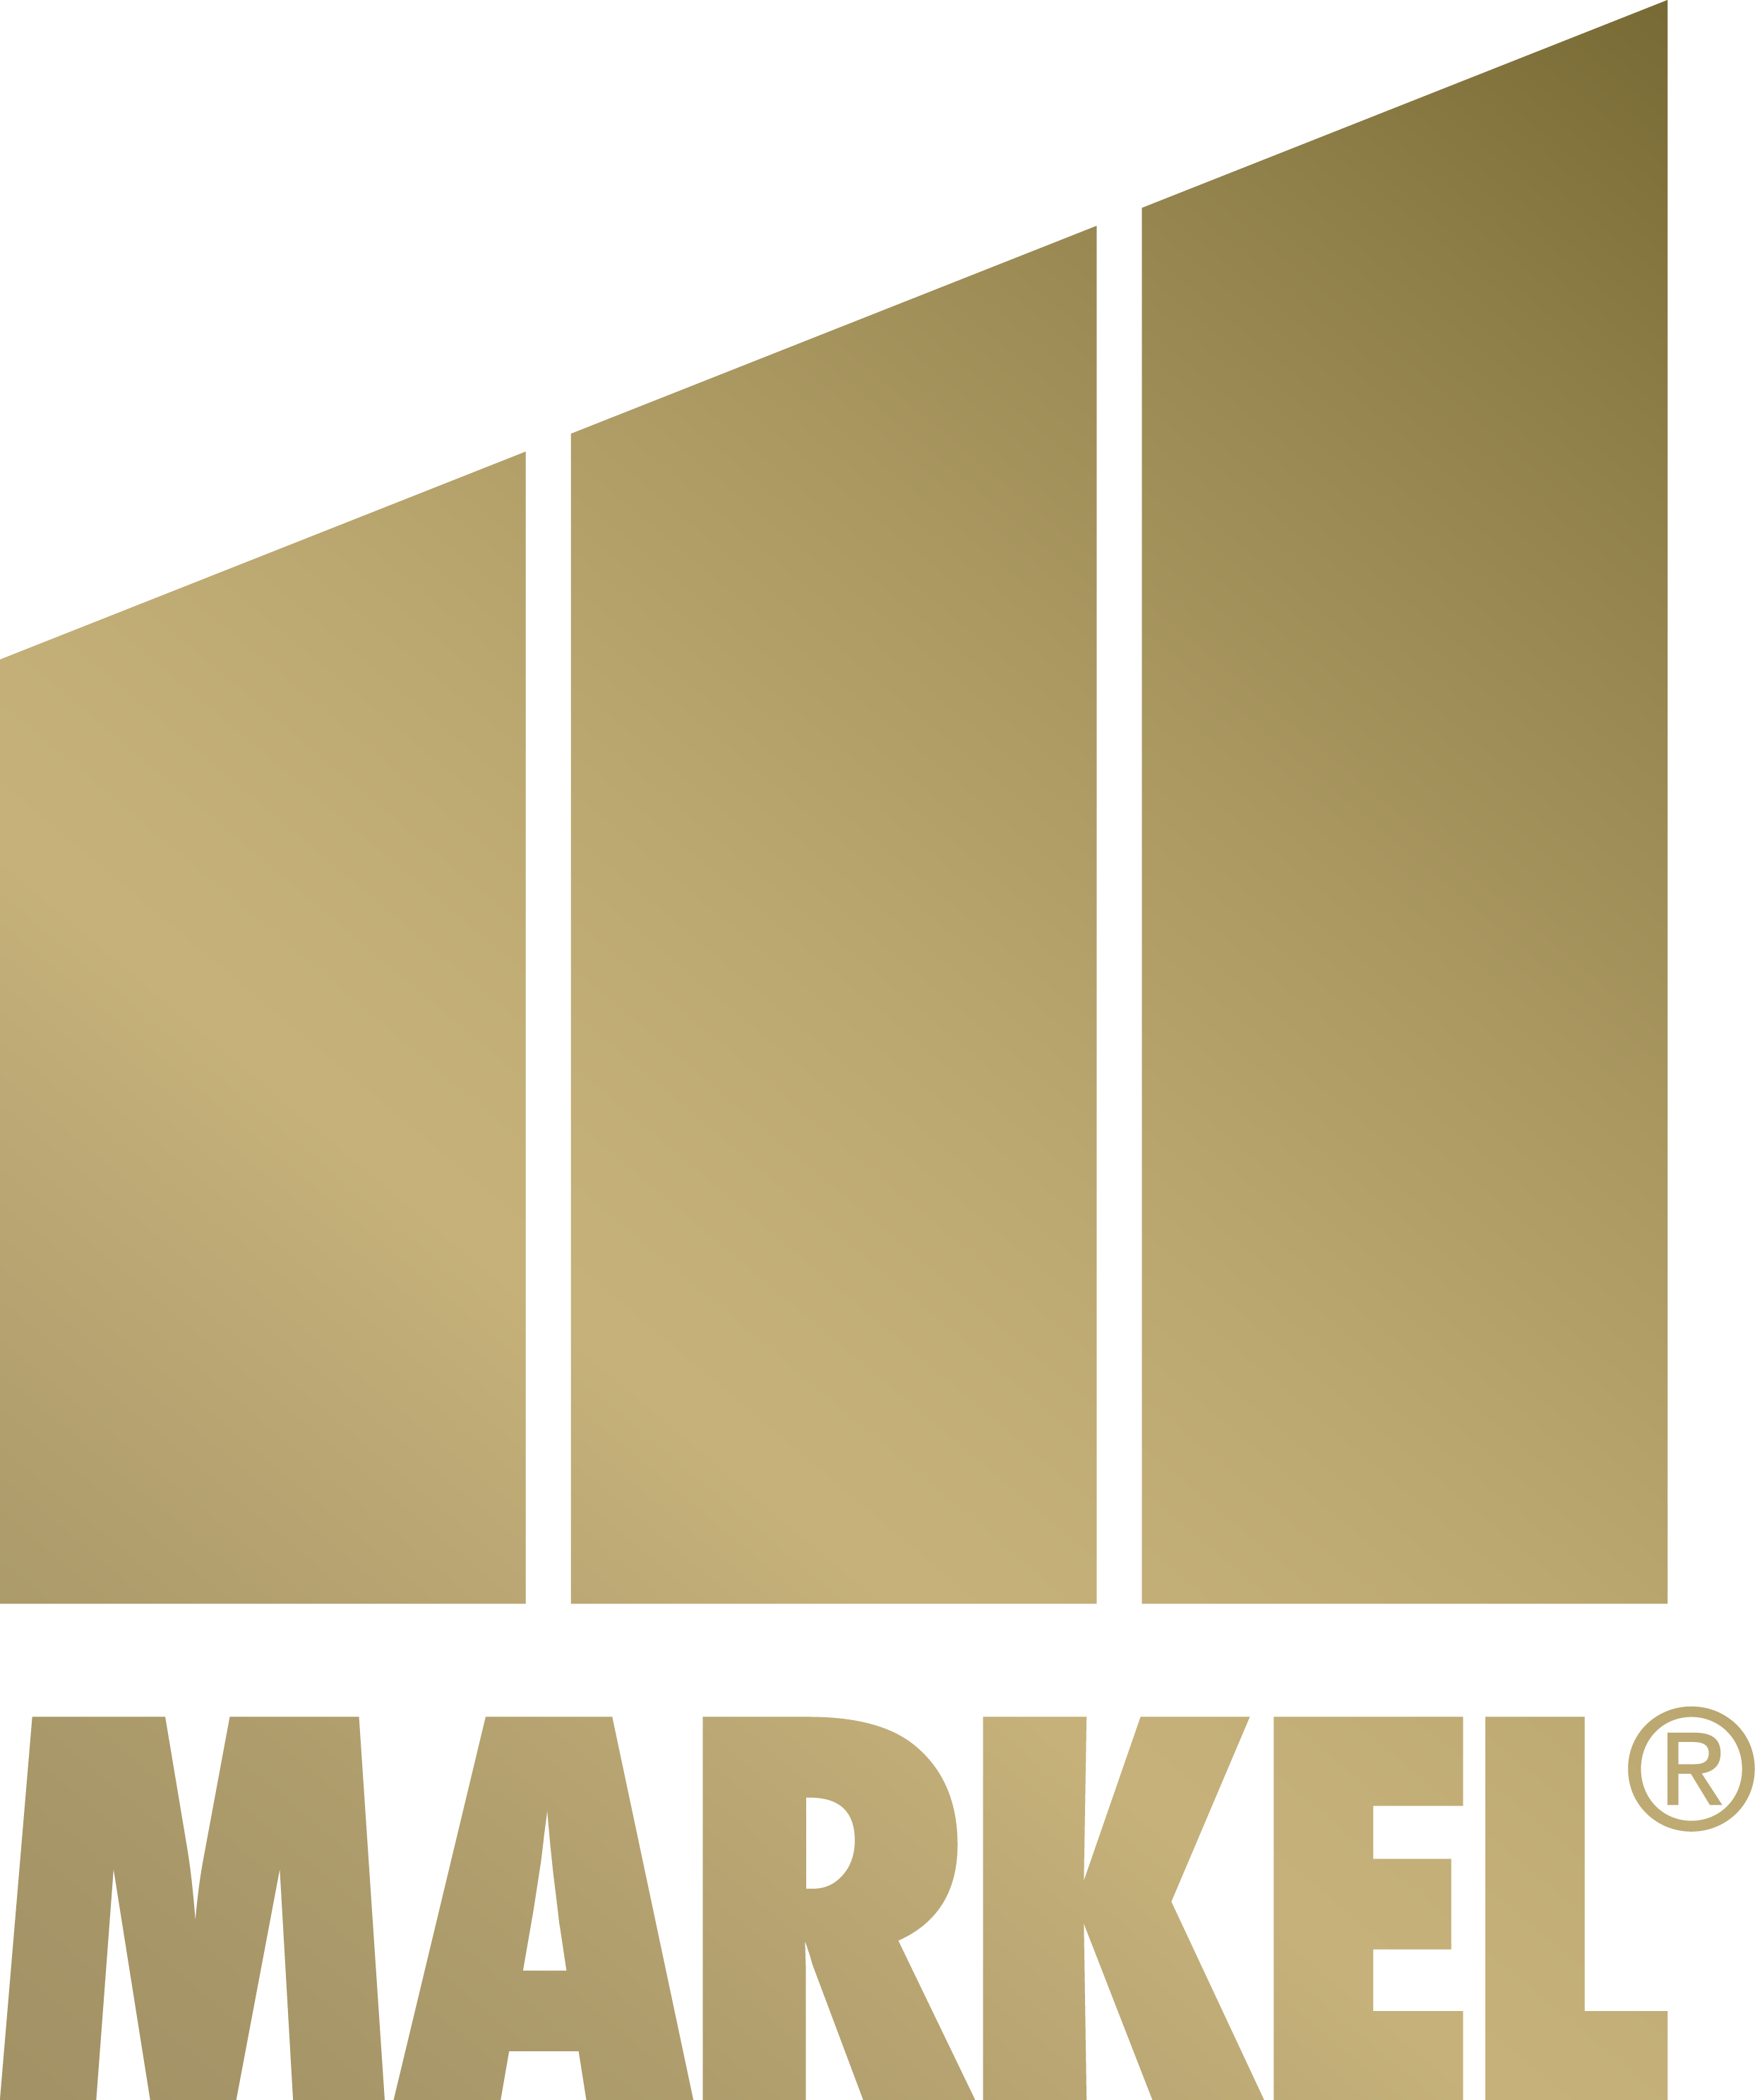 logo for Markel